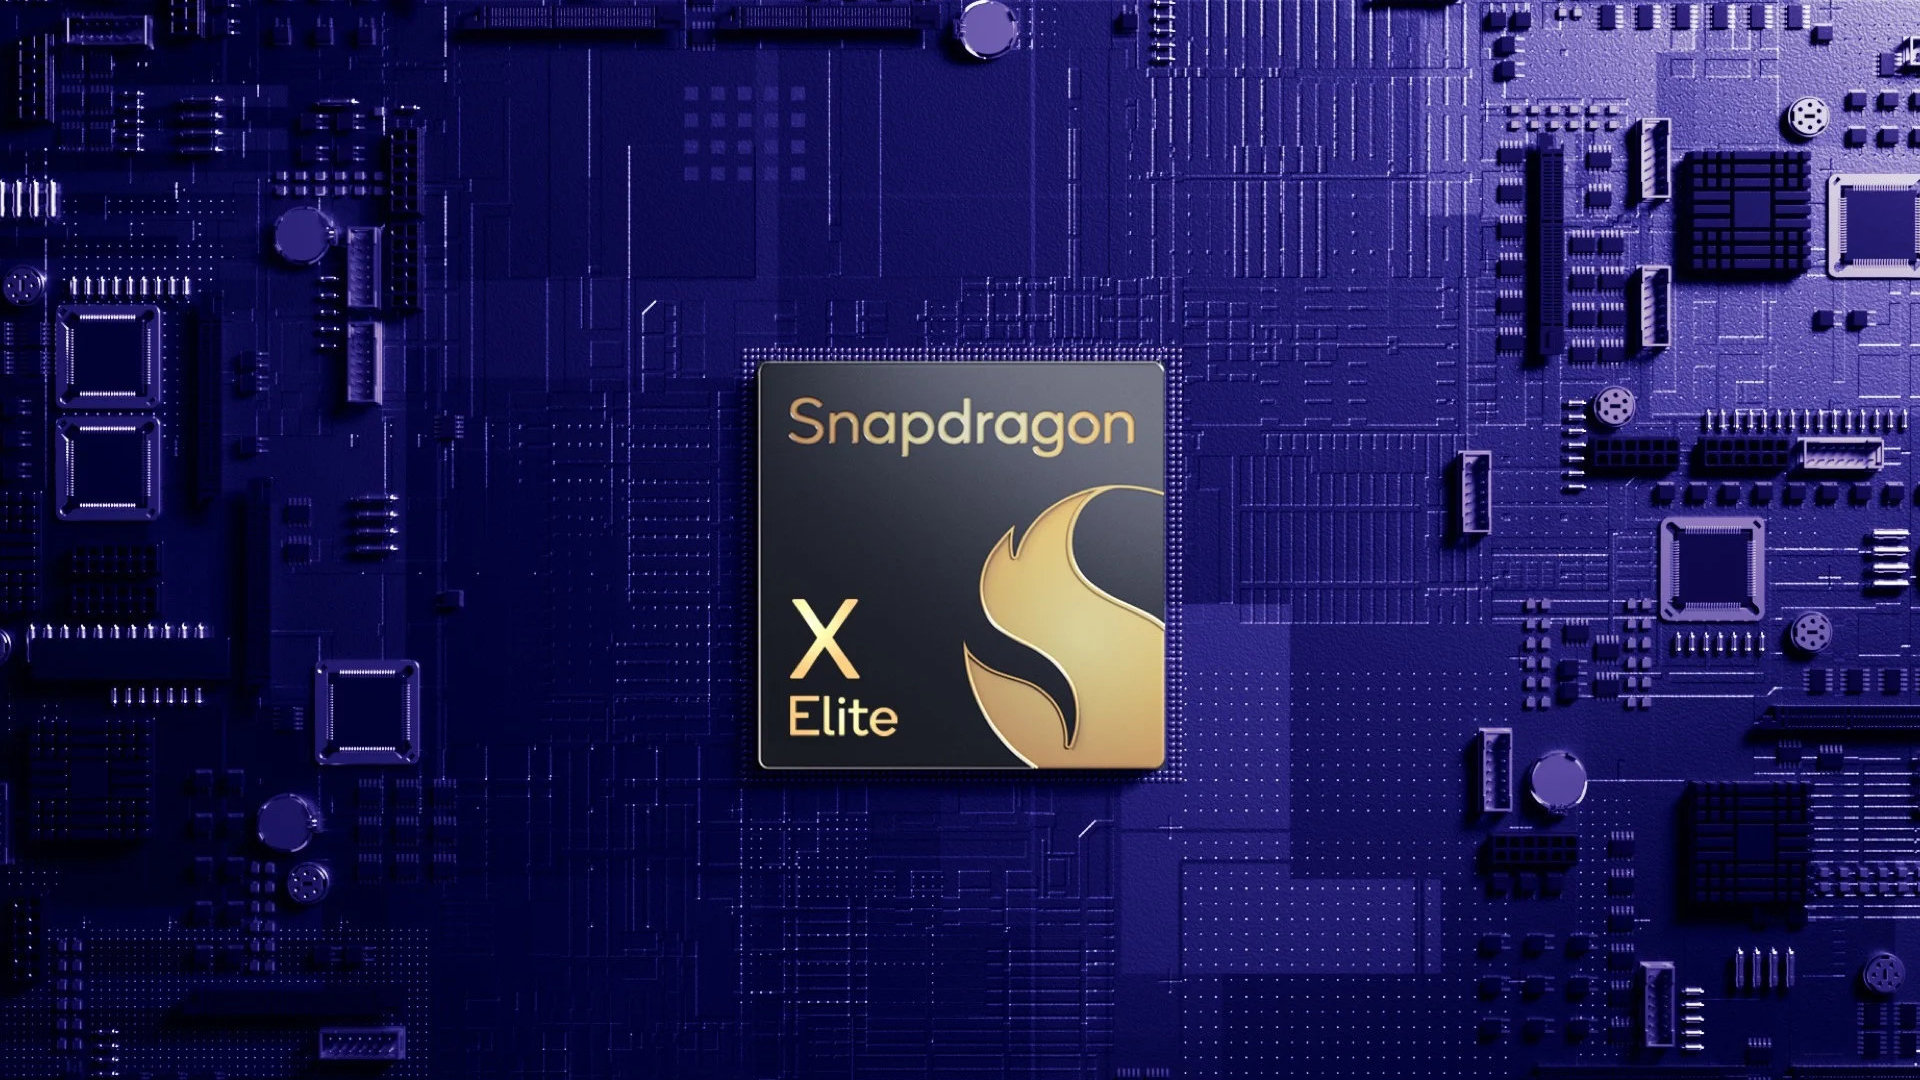 Le Snapdragon X Elite plus lent qu'un iPhone 12 ? La révolution Windows ARM pourrait encore attendre